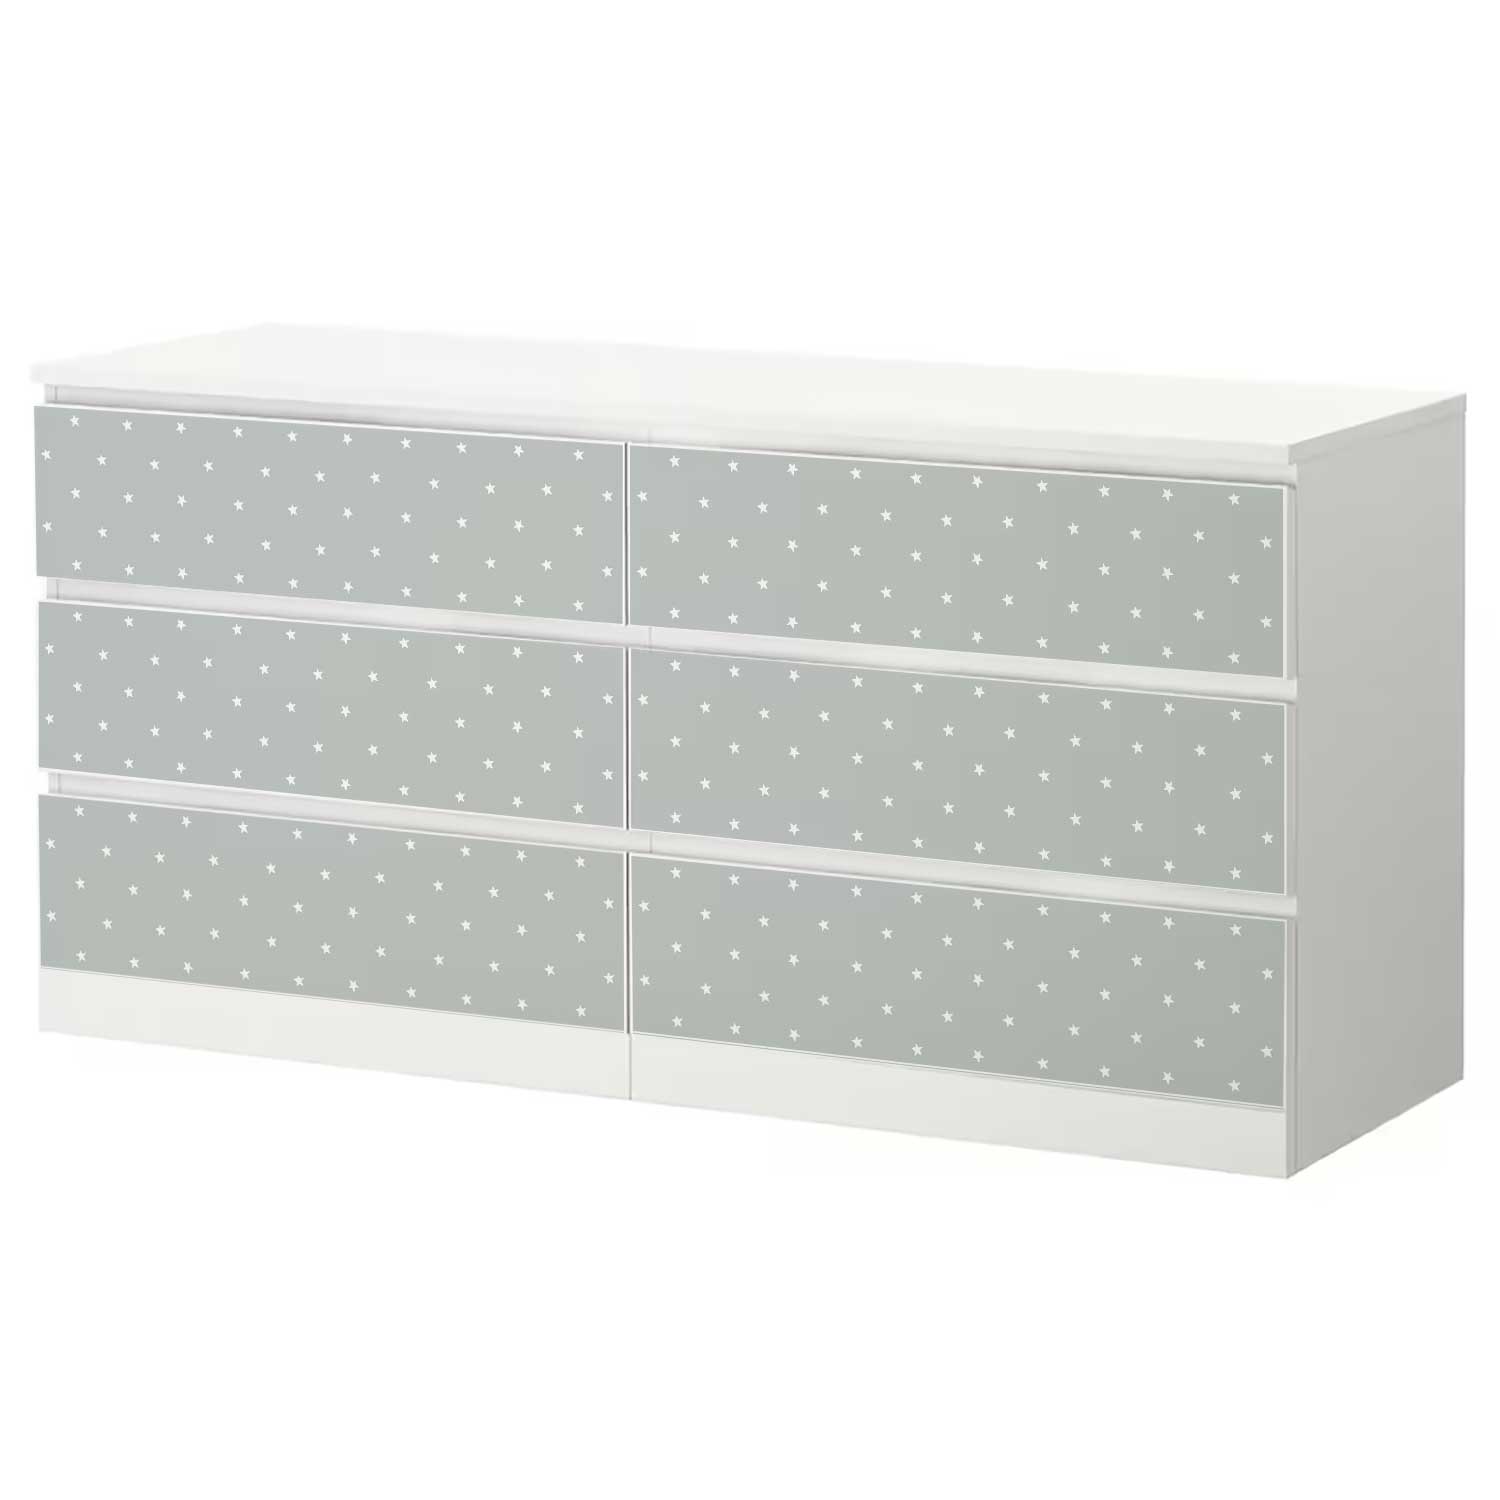 Möbelfolie Kinder für IKEA MALM Kommode 6-Schubladen 160x78 cm 'Sterne'